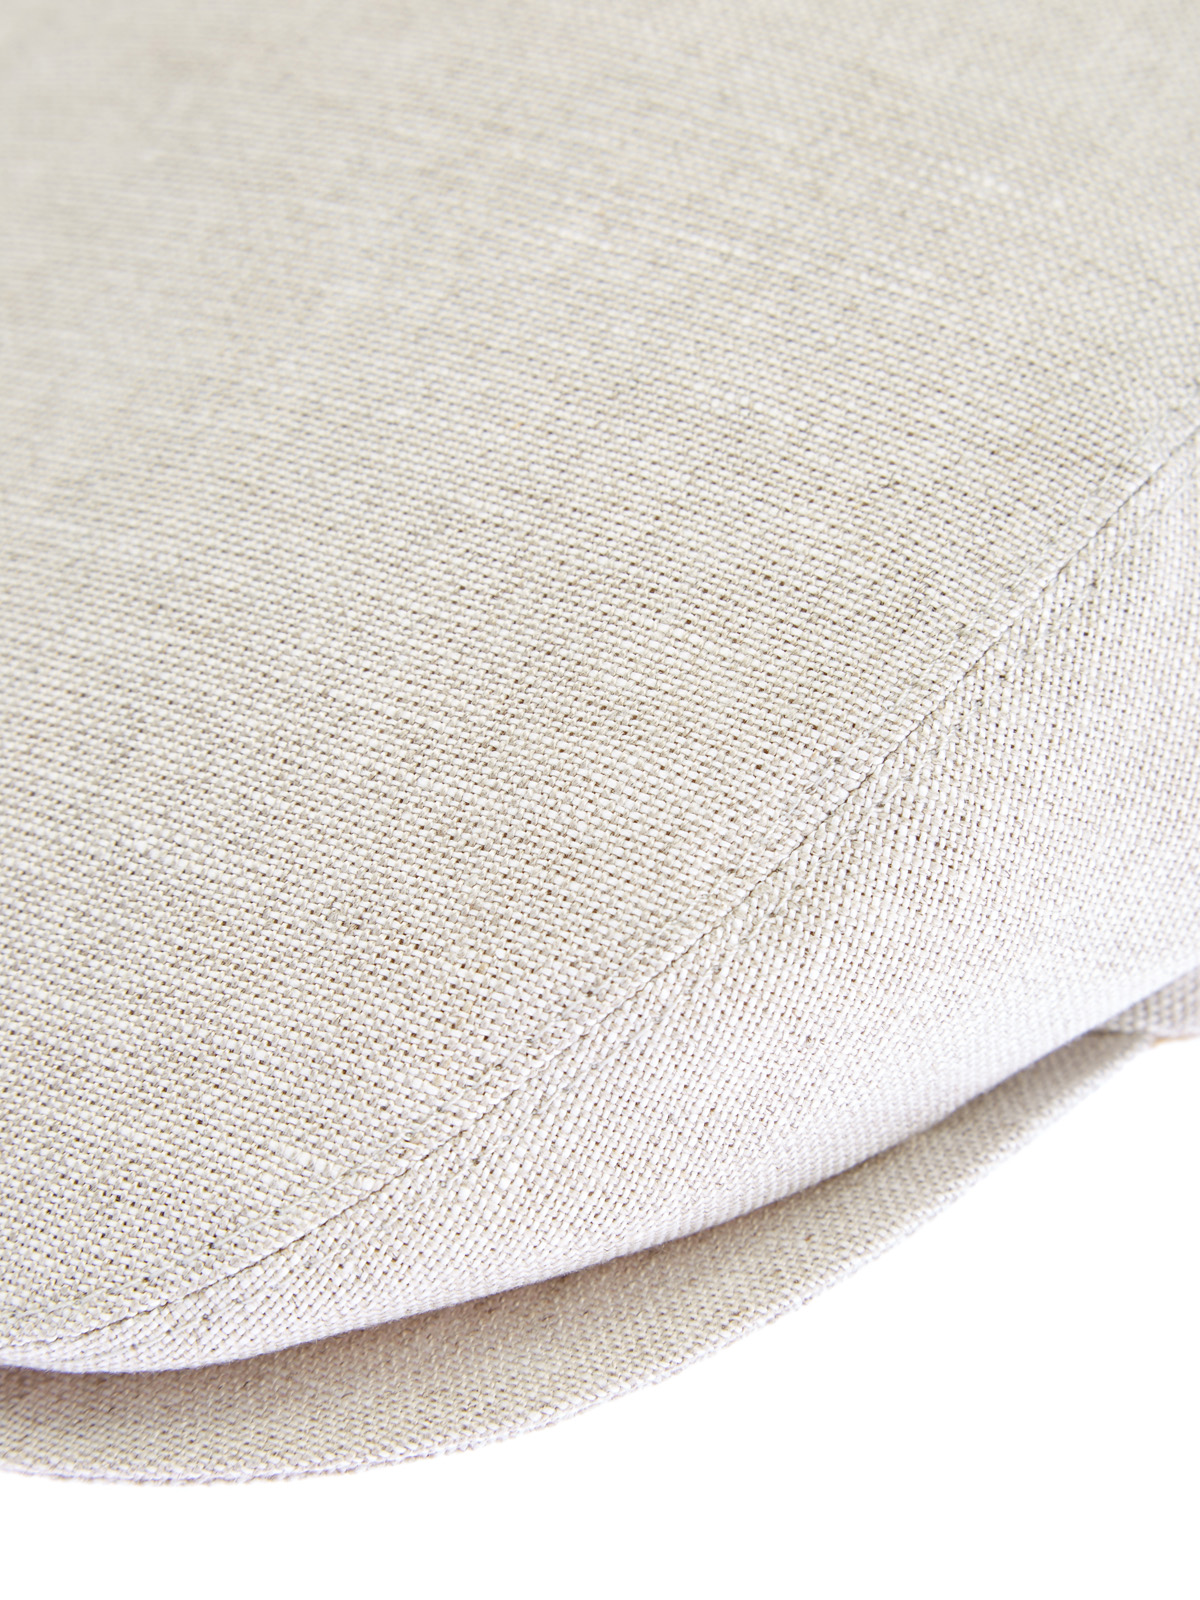 Светлая кепка-коппола из дышащей льняной ткани ELEVENTY, цвет белый, размер M;L - фото 5